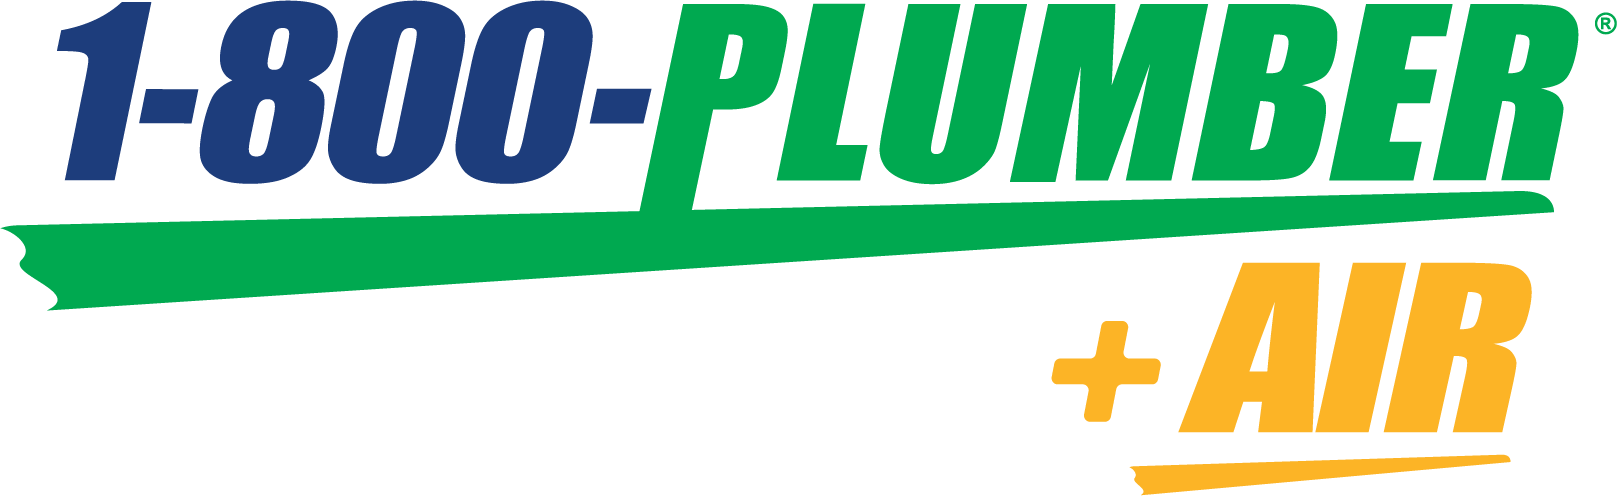 1800plumber logo